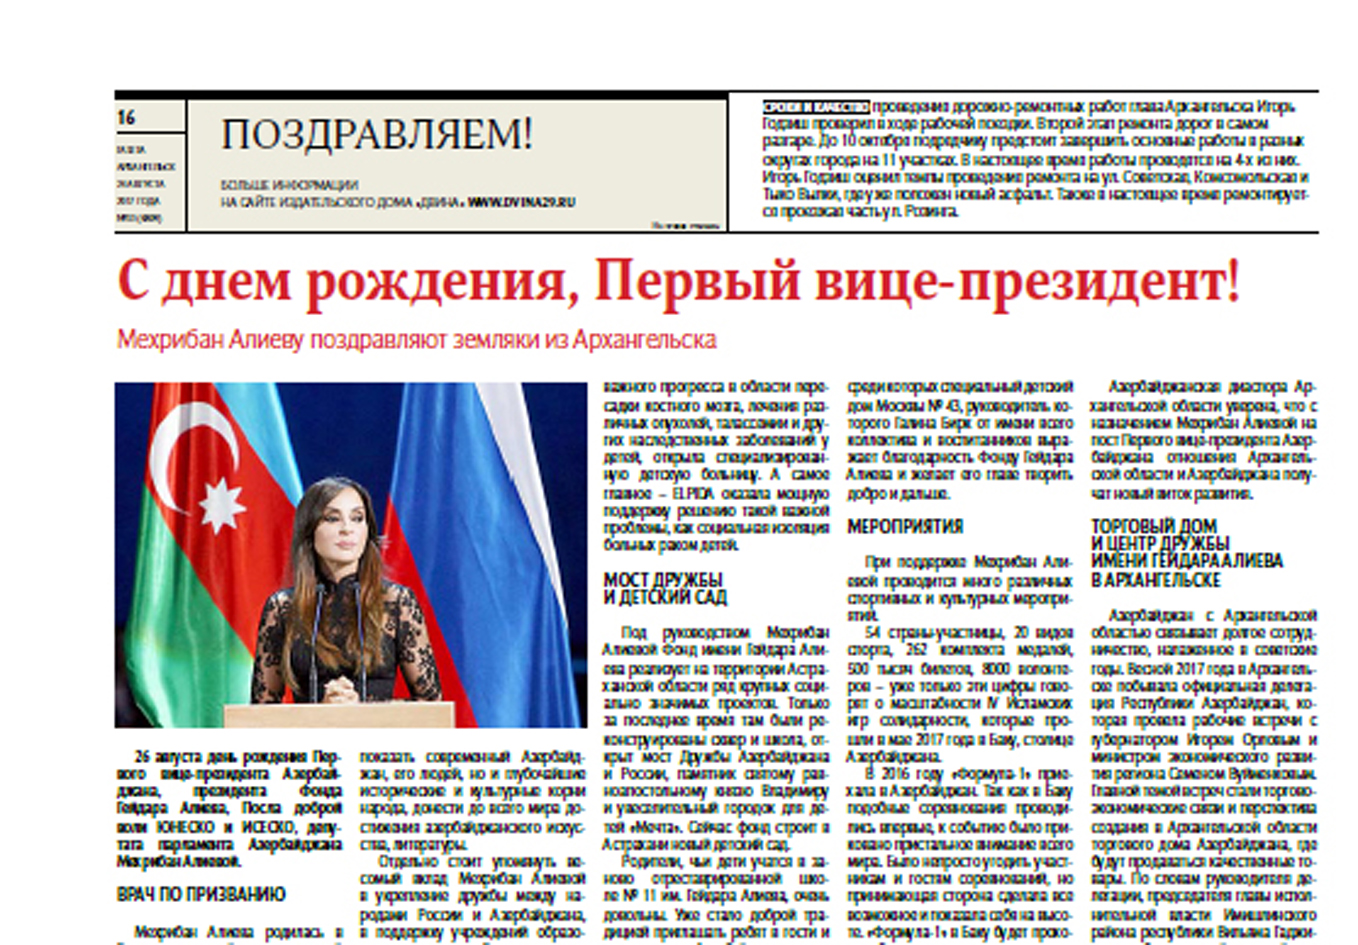 Архангельская газета опубликовалаобширный материал, посвященный Первому вице-президентуАзербайджана Мехрибан Алиевой